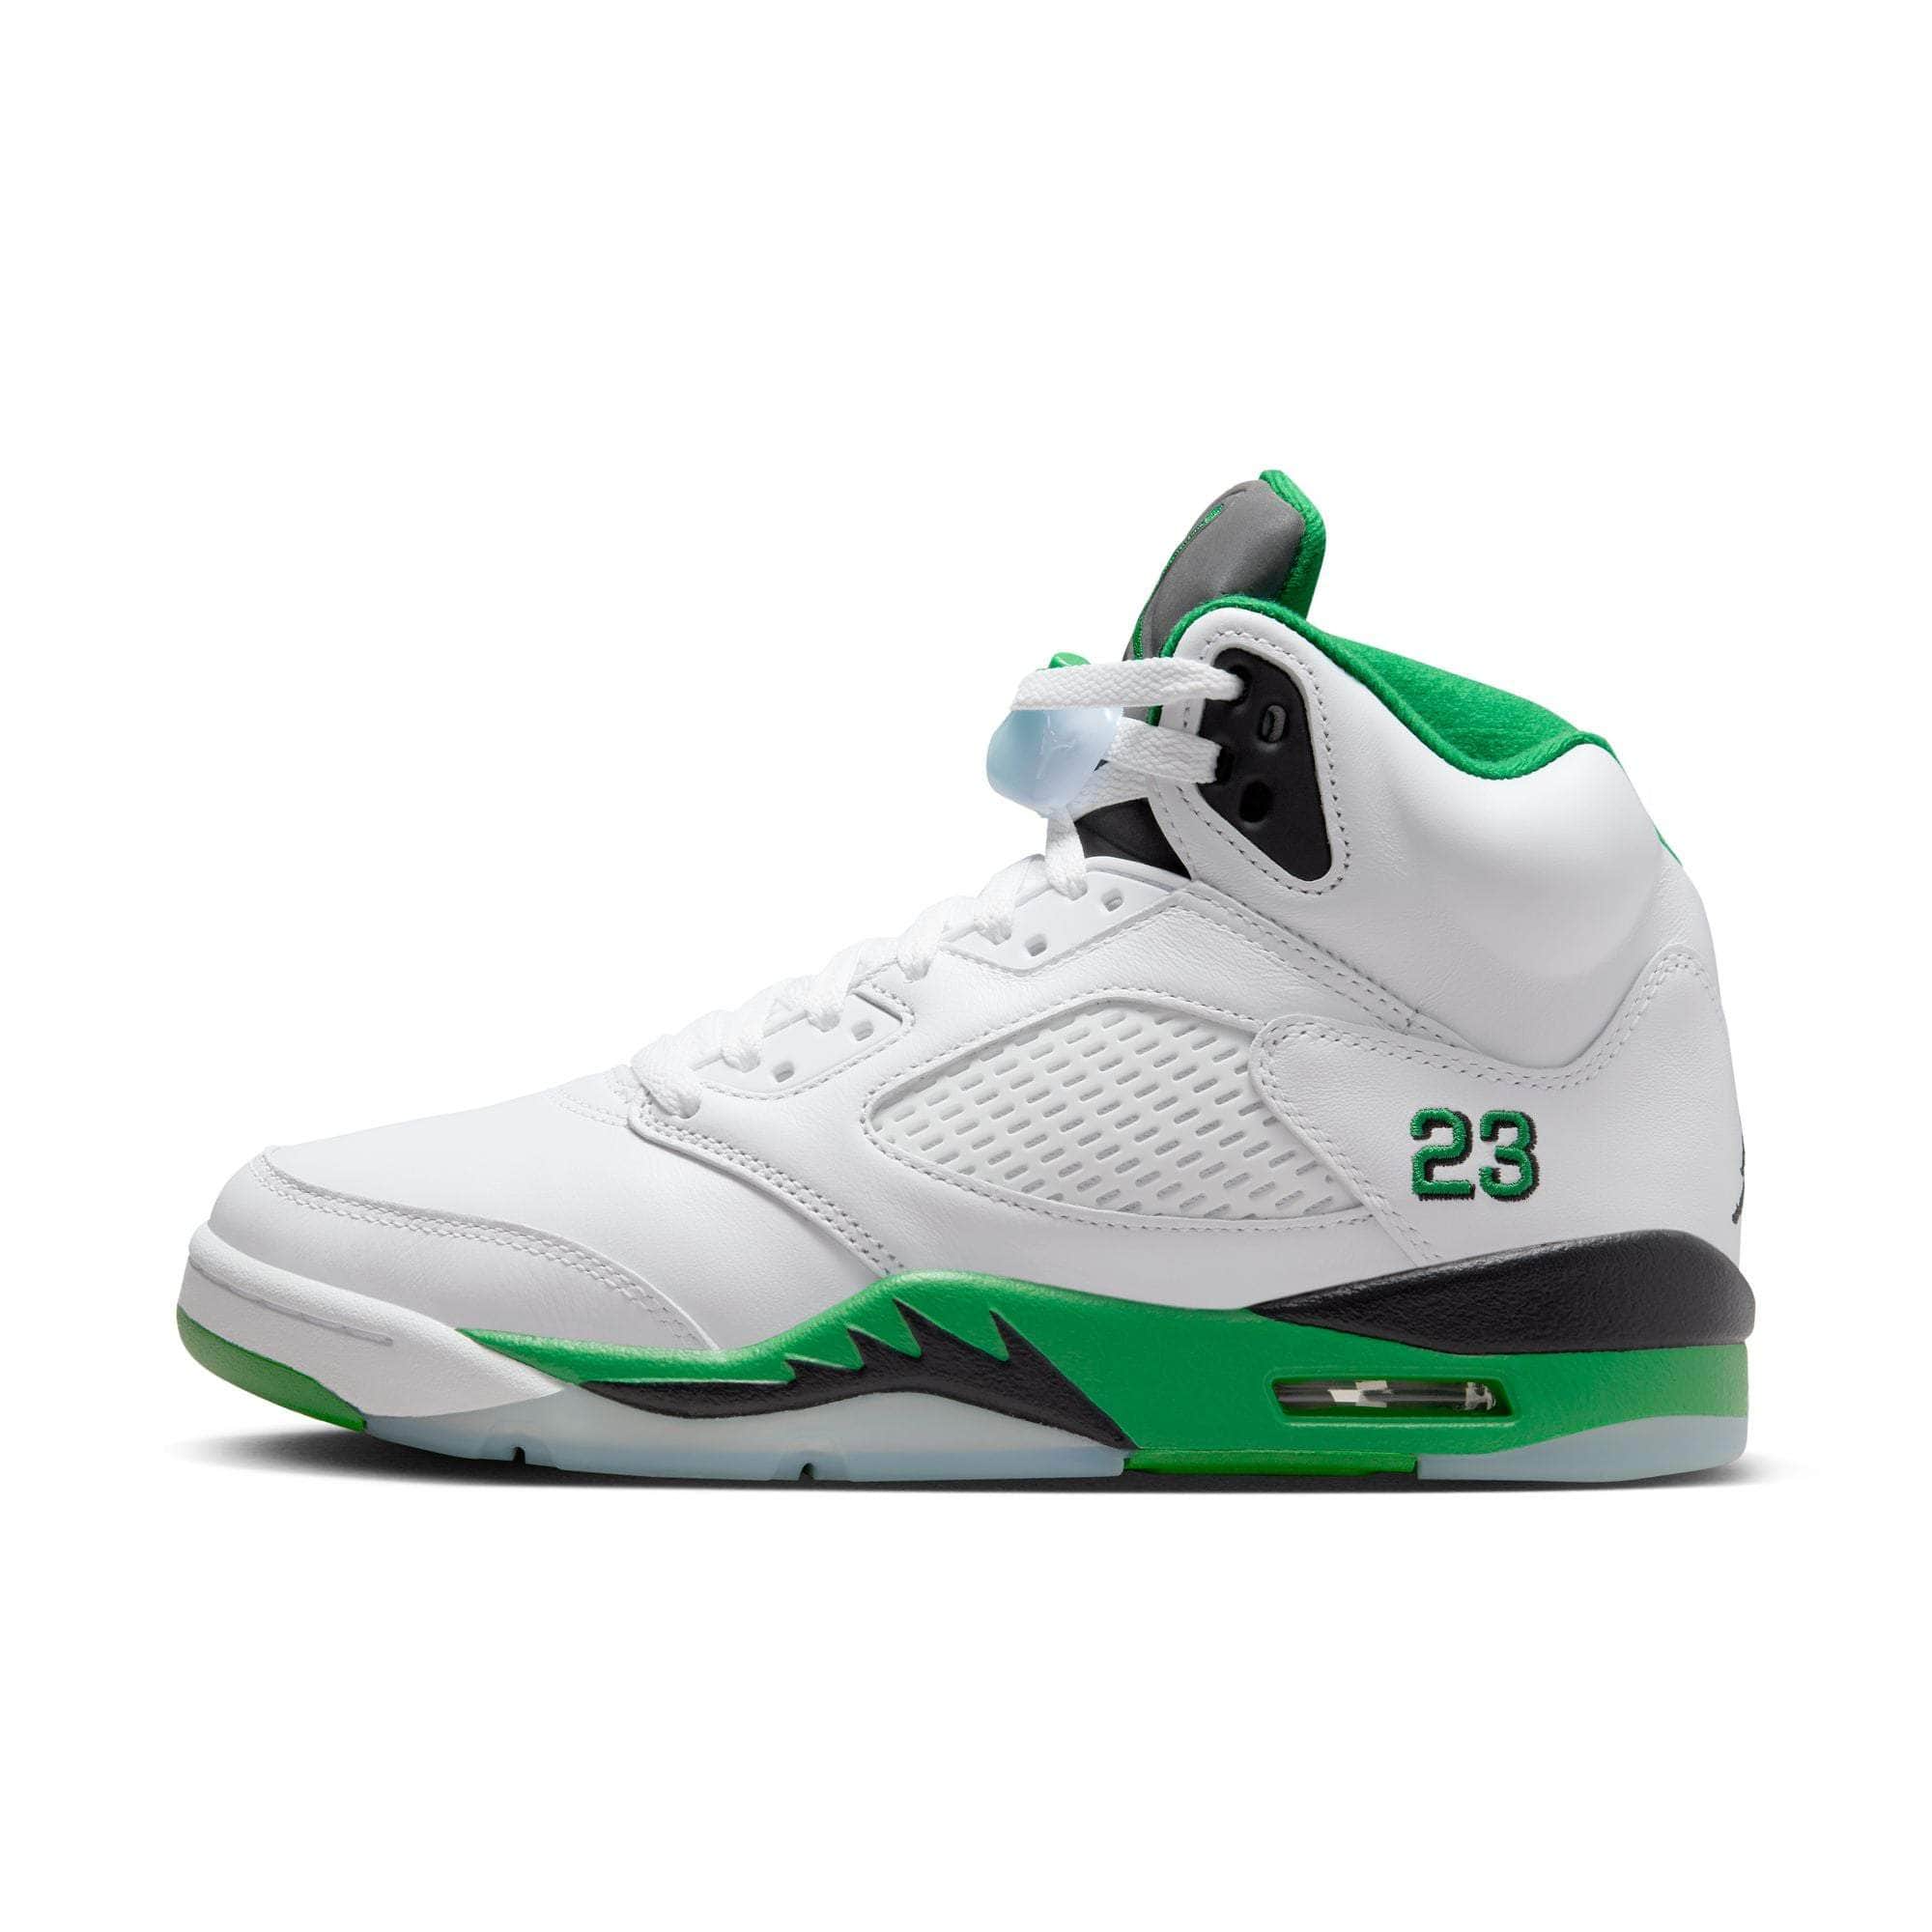 Air Jordan Footwear Air Jordan 5 Retro “Lucky Green” - Women's